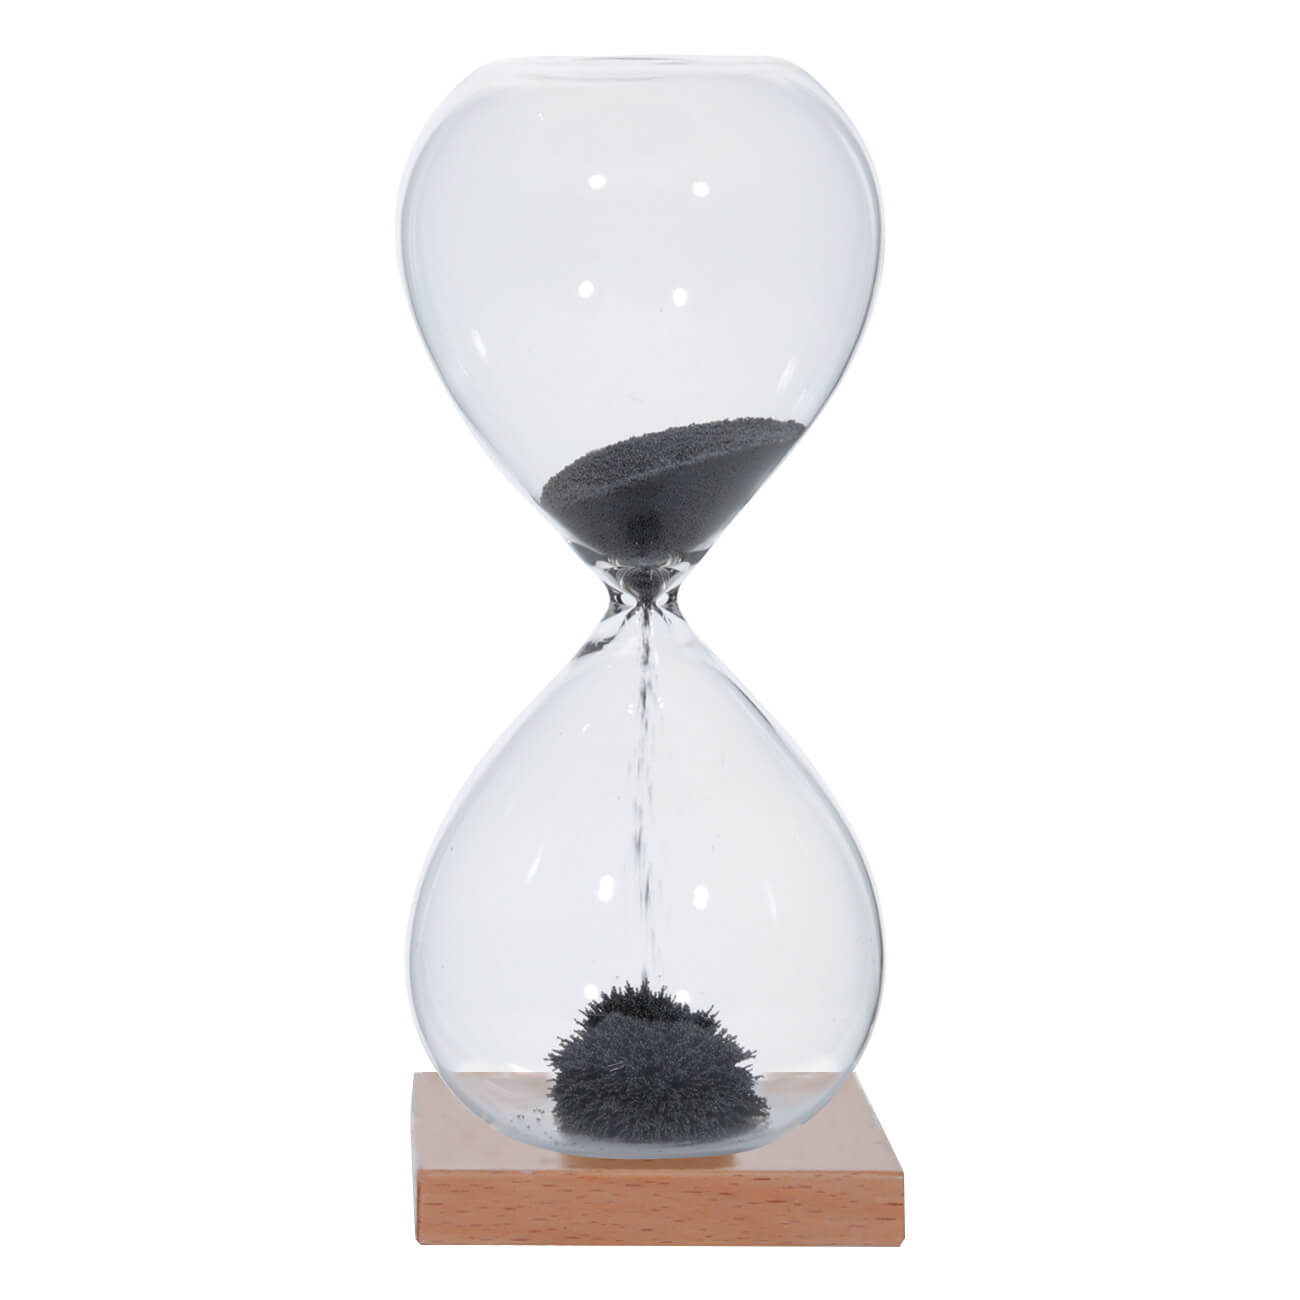 Kuchenland Часы песочные, 16 см, 1 минута, магнитные, на подставке, стекло/дерево, серые, Sand time шахматы магнитные 32 х 32 см